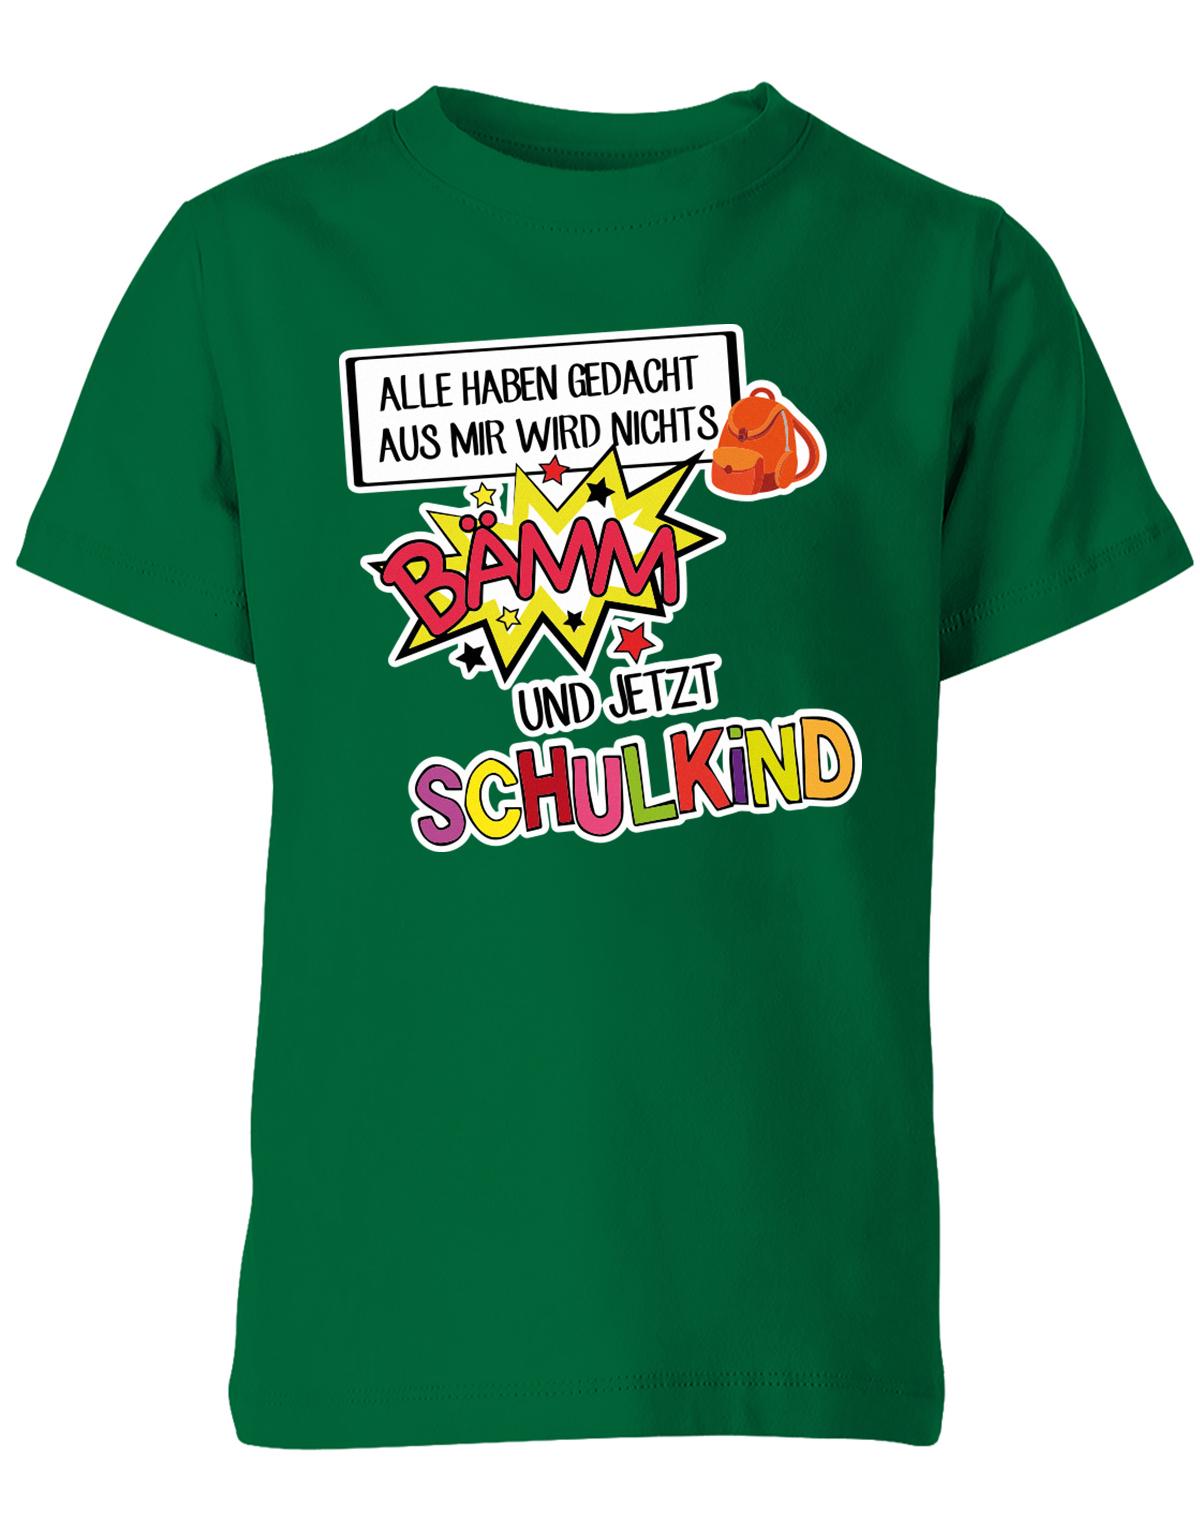 Alle haben gedacht aus mir wird nichts - bämm Schulkind - Einschulung T-Shirt Grün